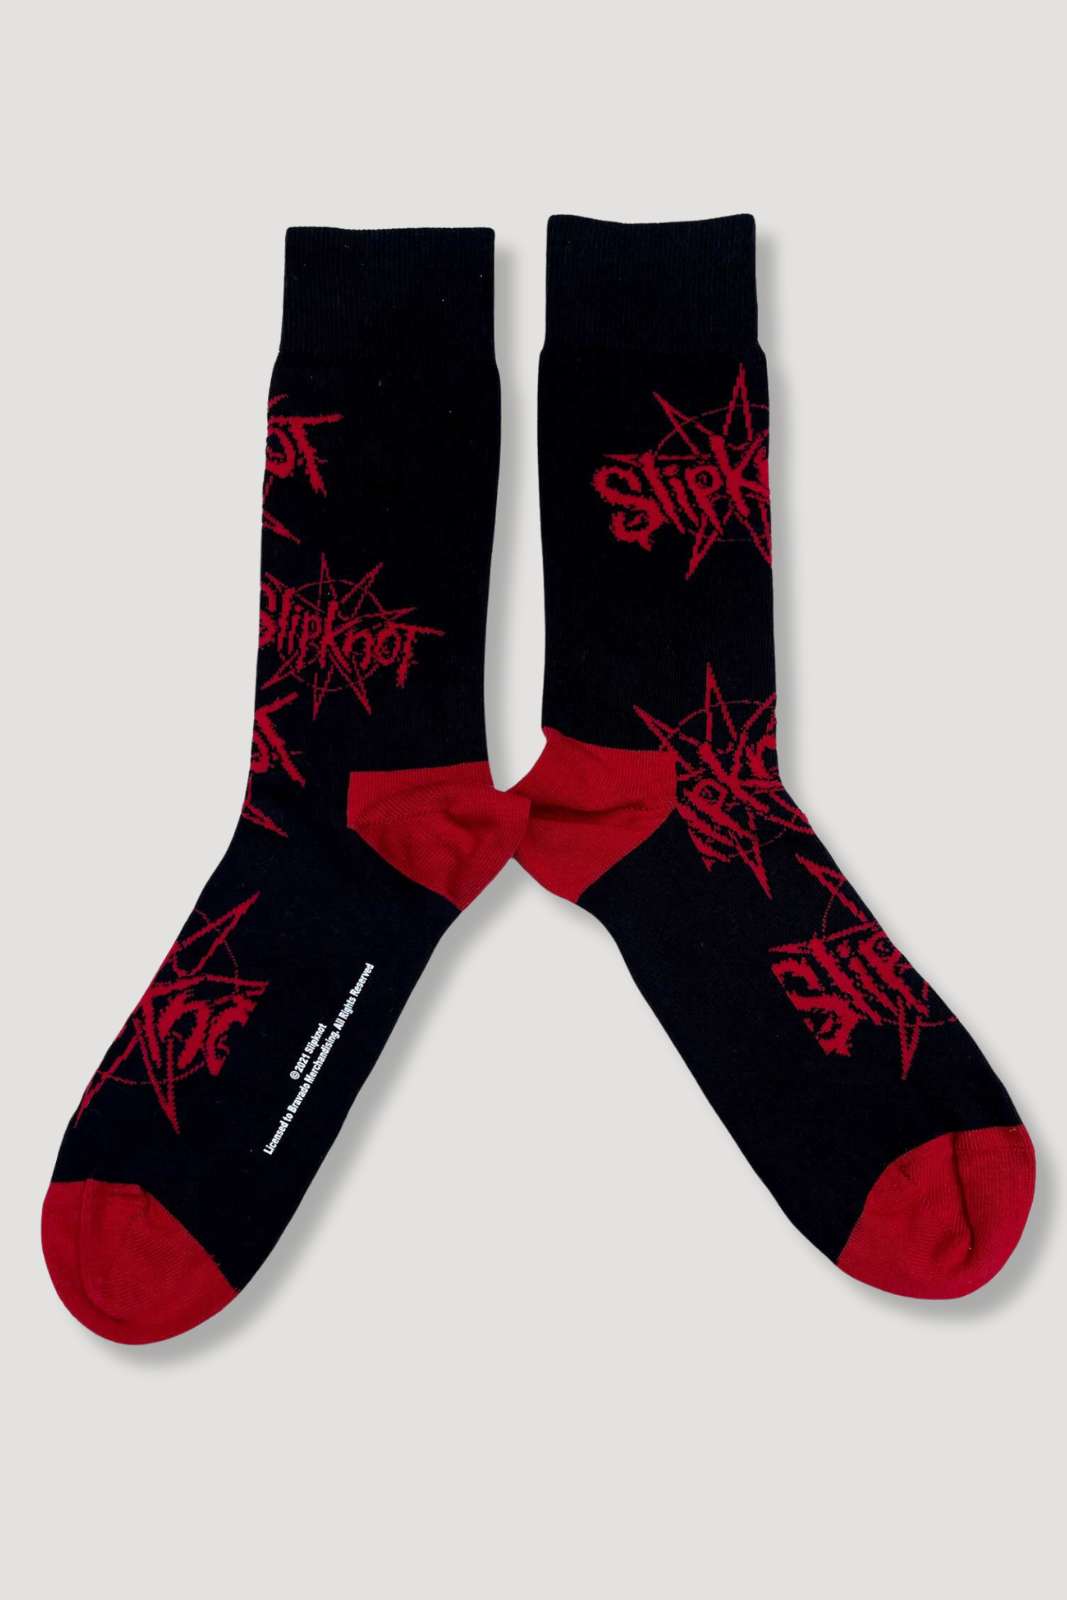 Slipknot socks